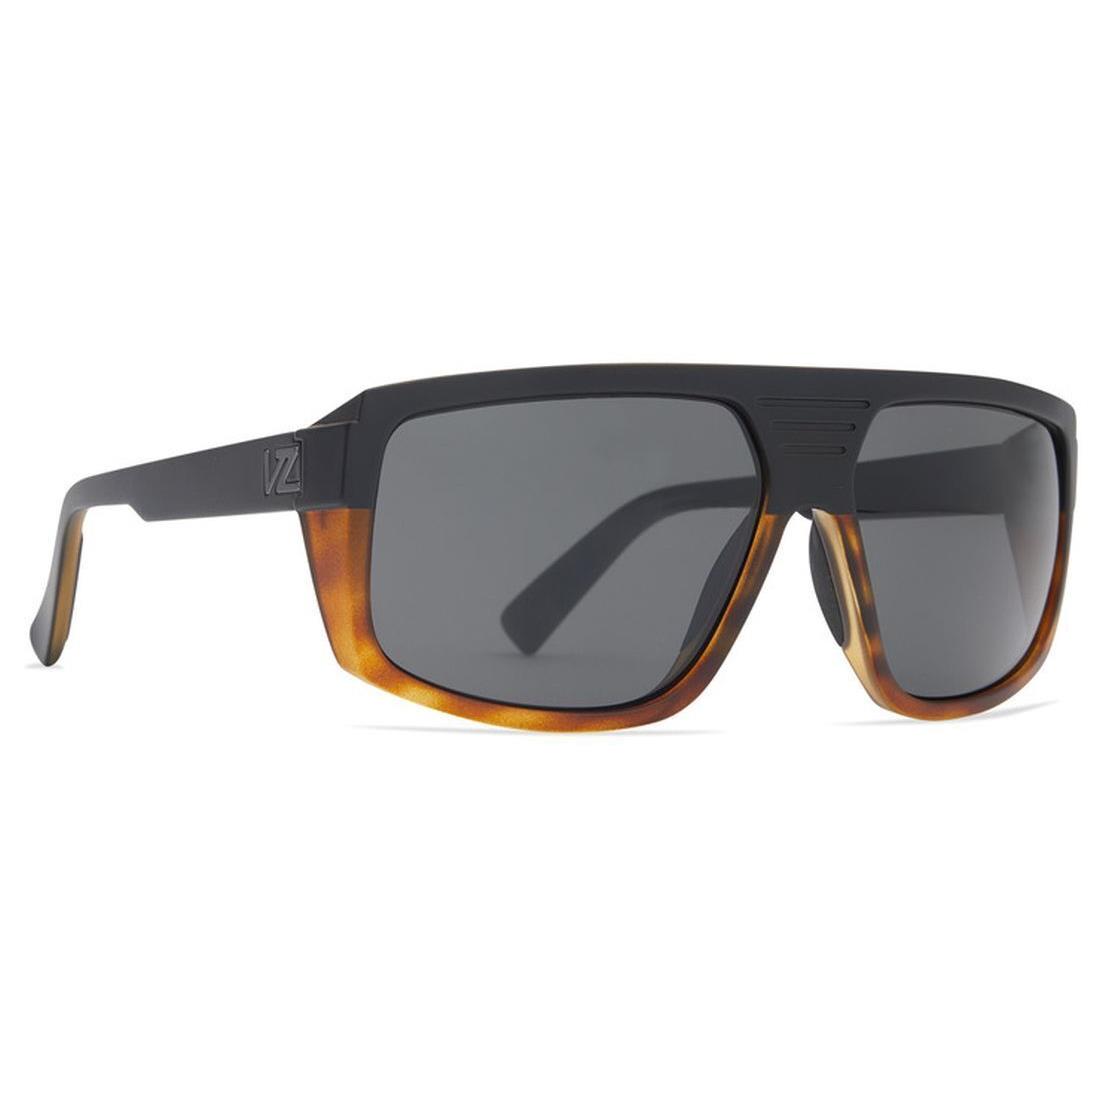 Vonzipper Quazzi Sunglasses Hardline Black Tort with Vintage Grey Lens - Black Tort Frame, Vintage Grey Lens